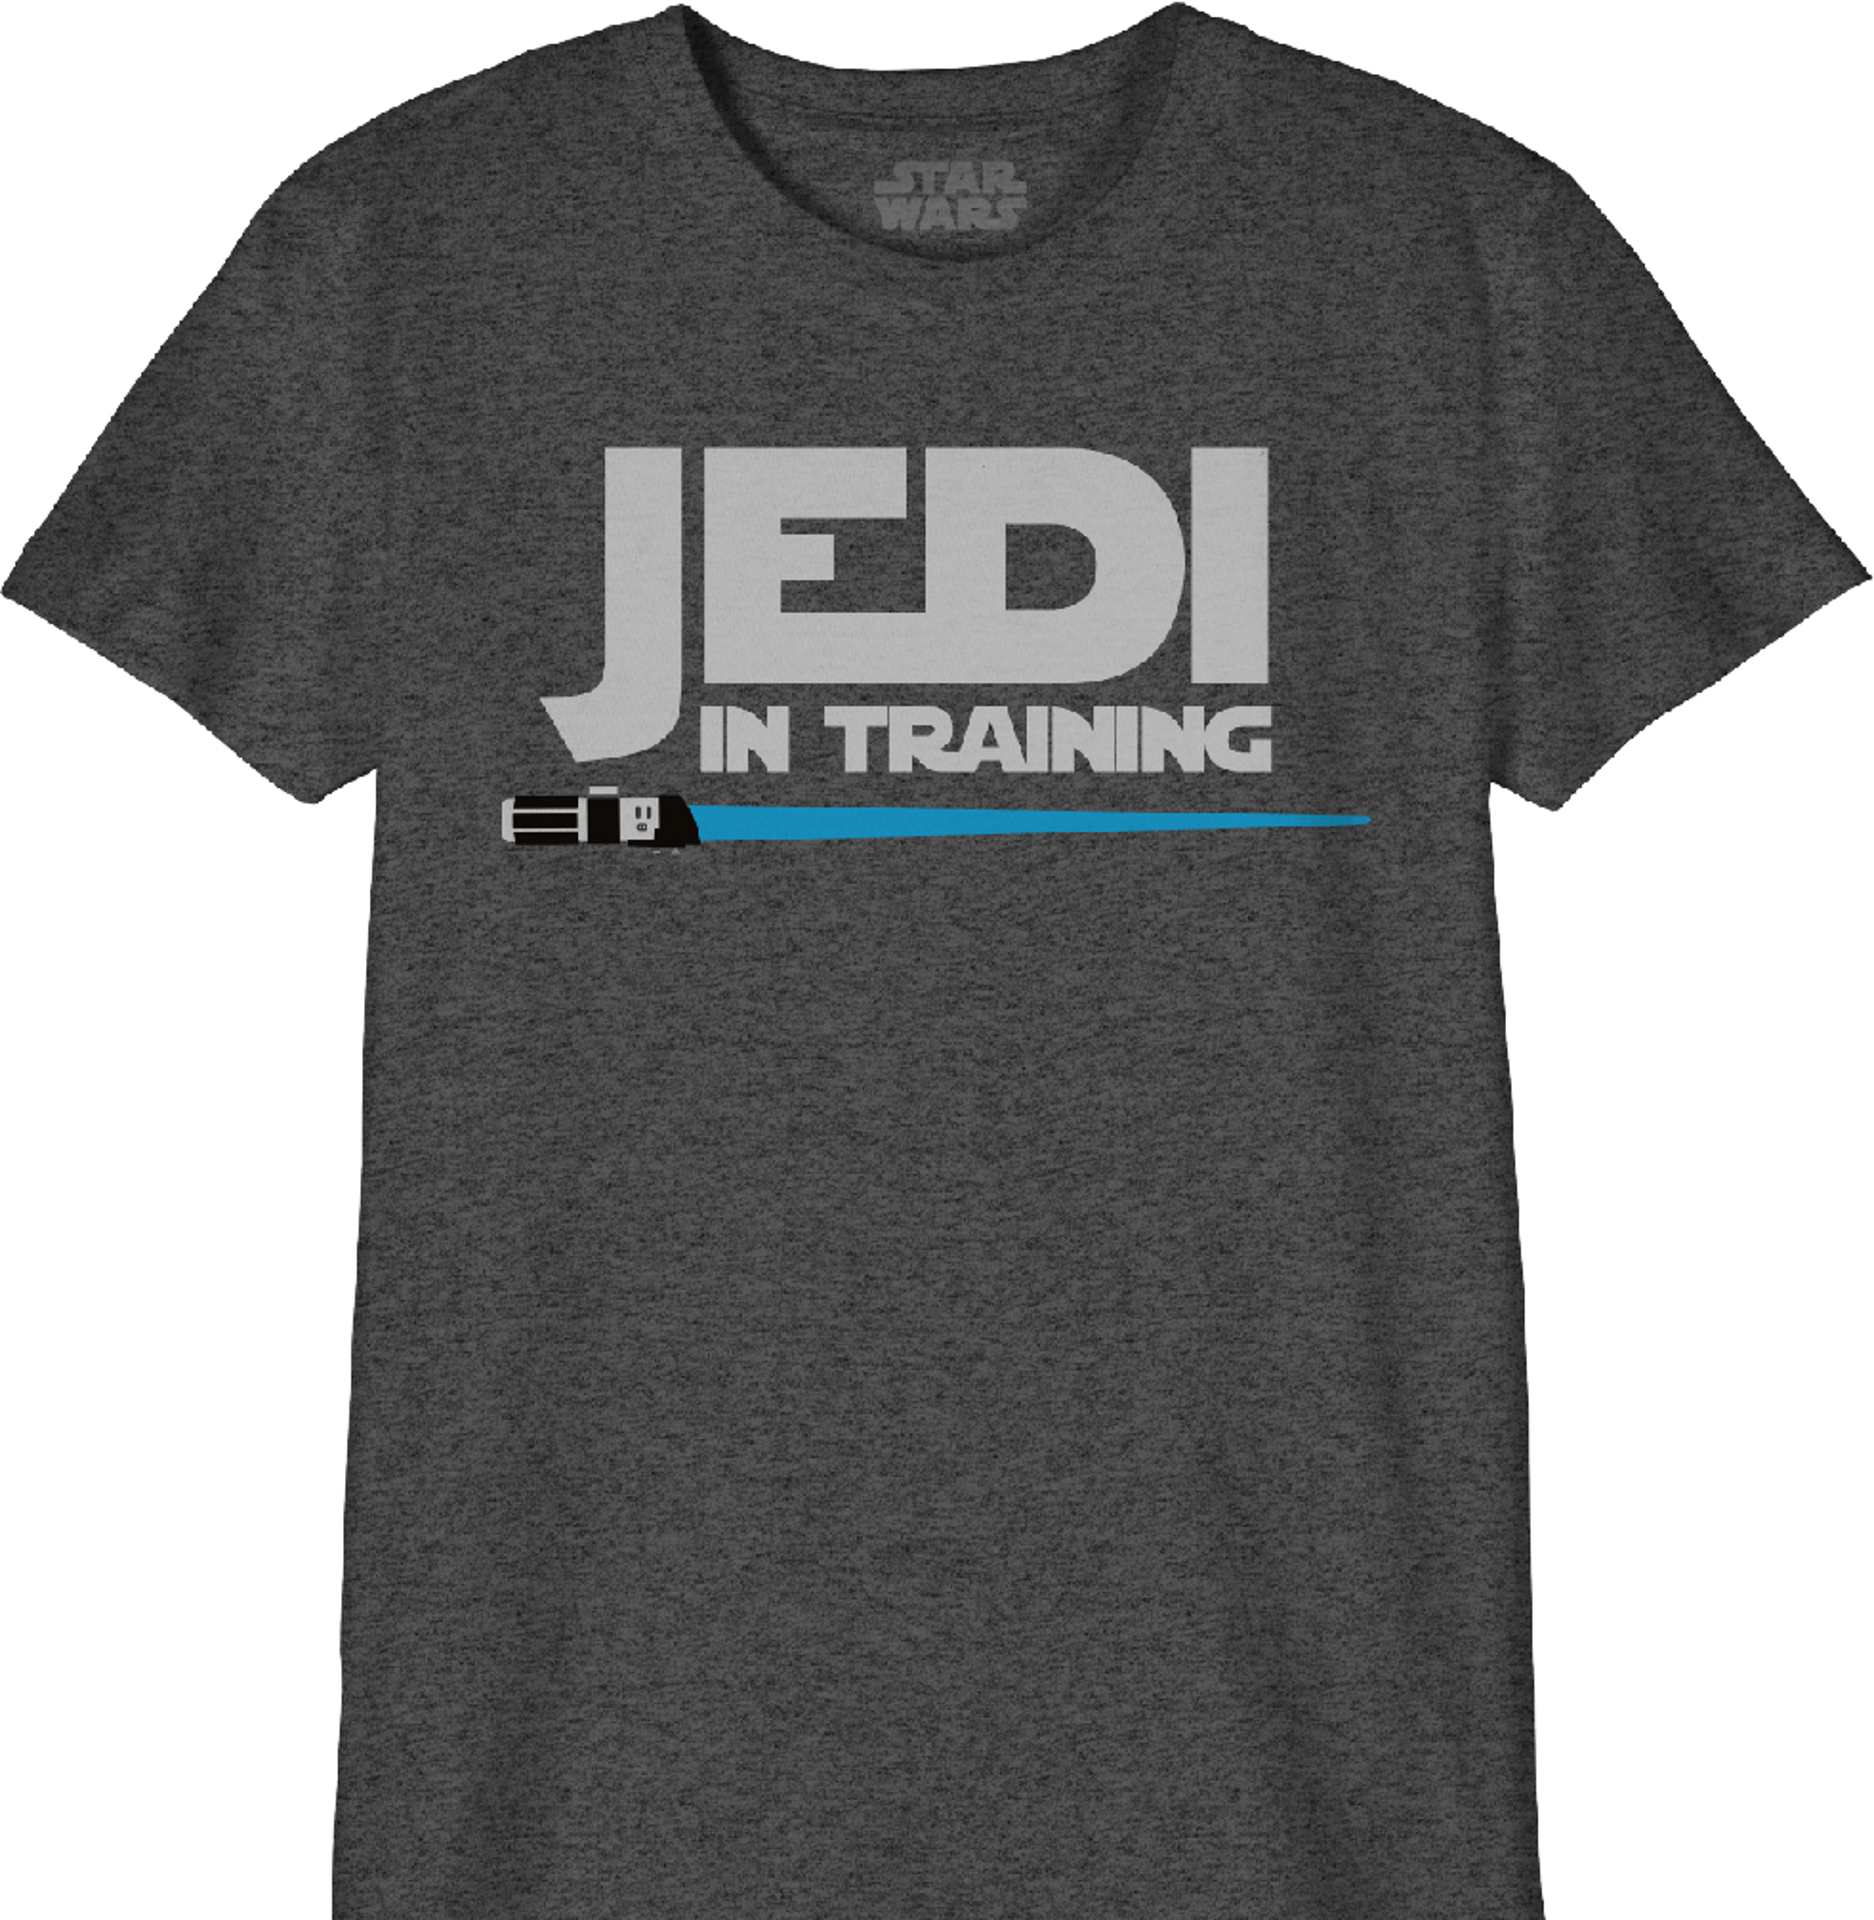 Star Wars - T-Shirt Noir Enfant Jedi en formation - 12 ans